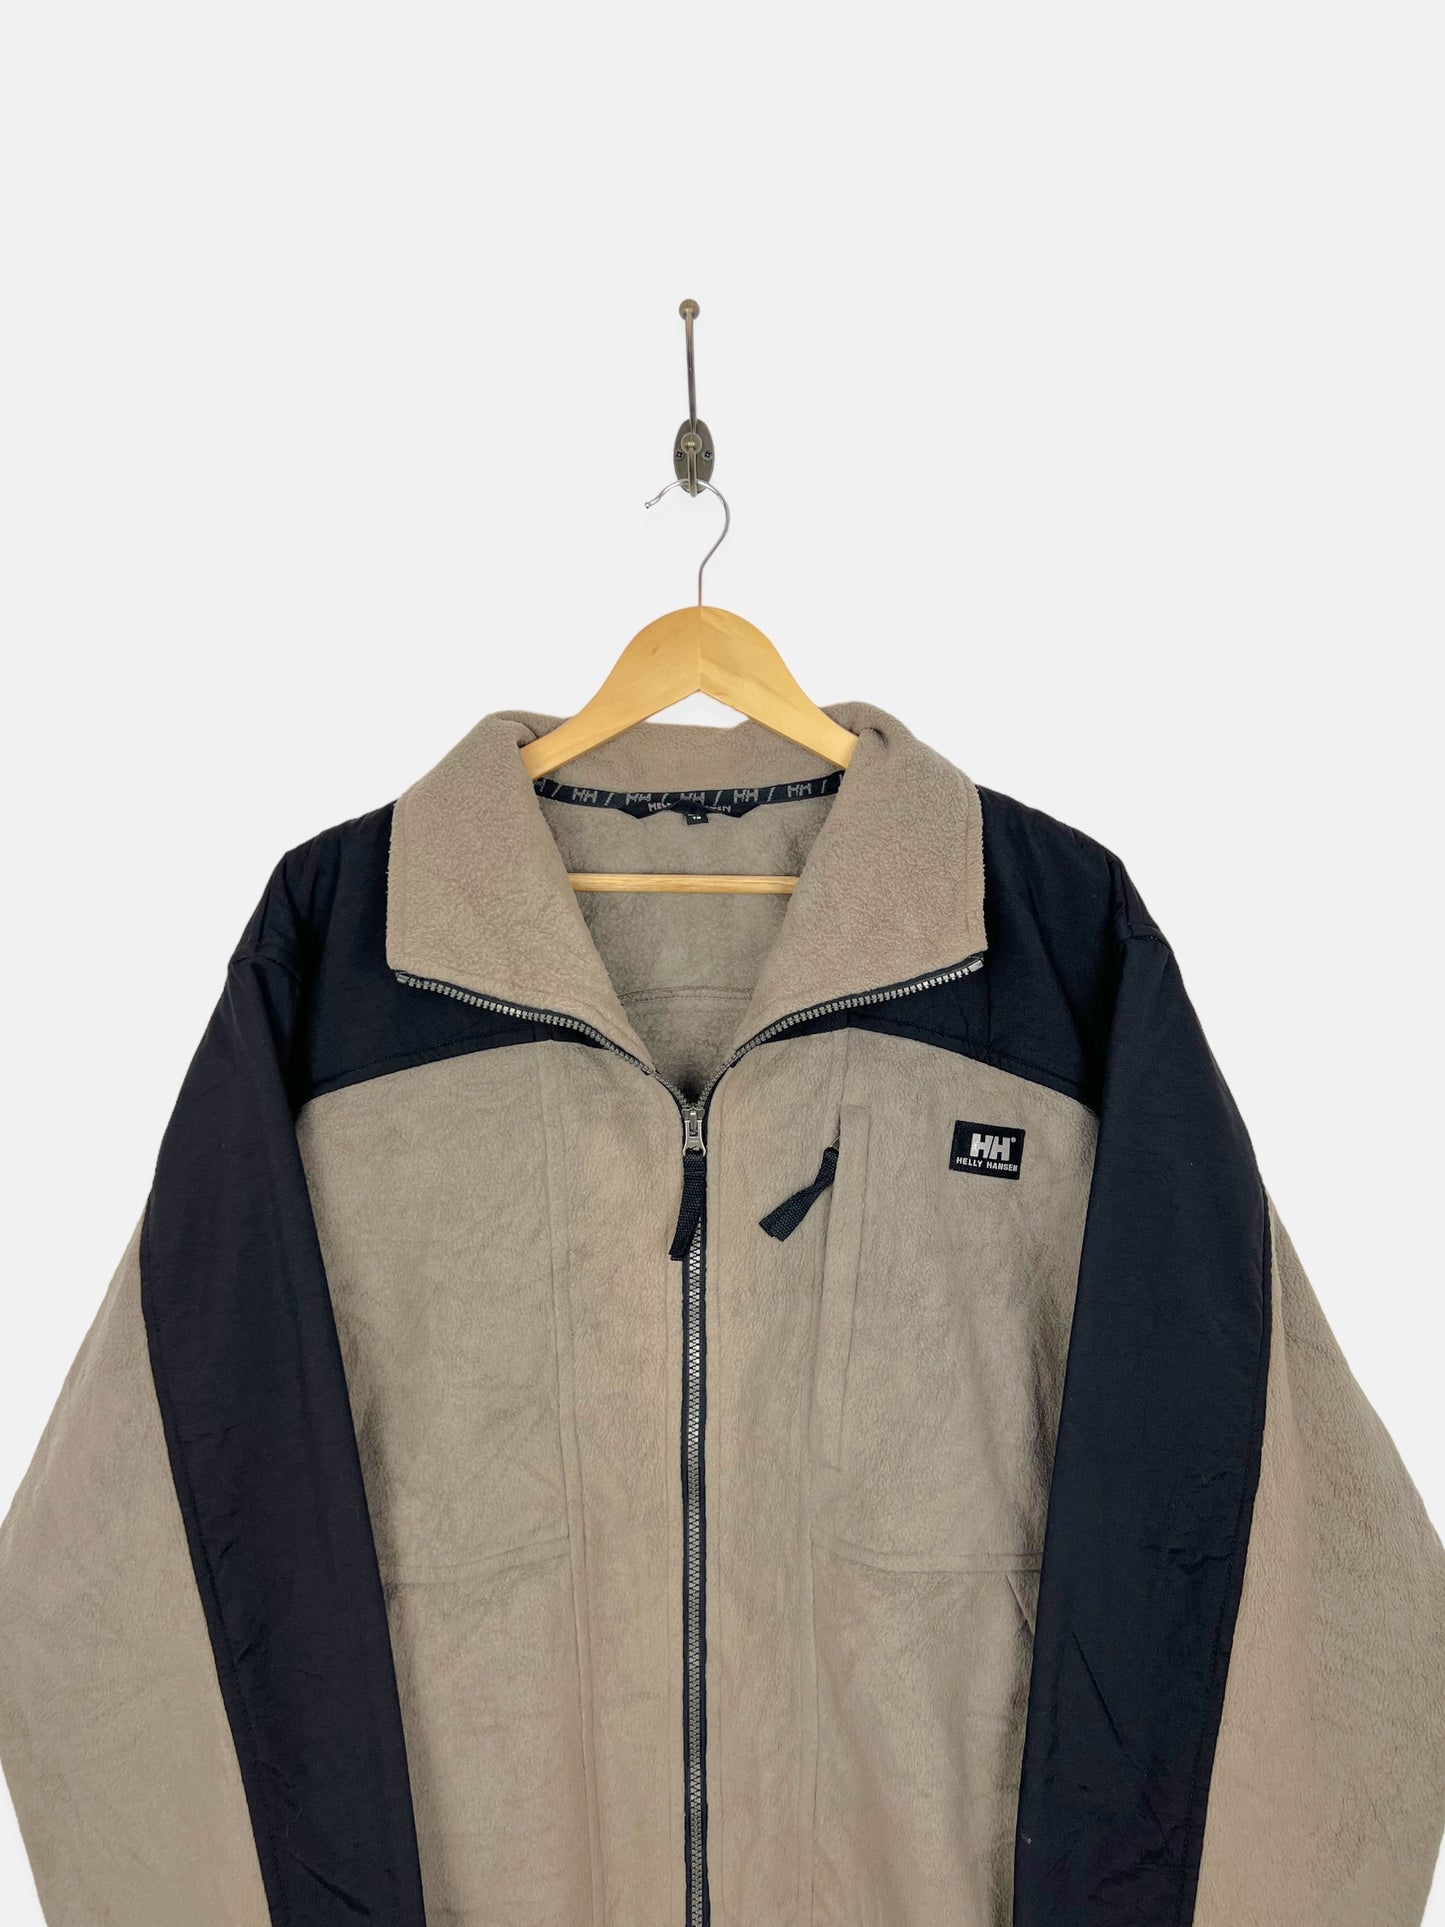 90's Helly Hansen Vintage Fleece/Jacket Size XL